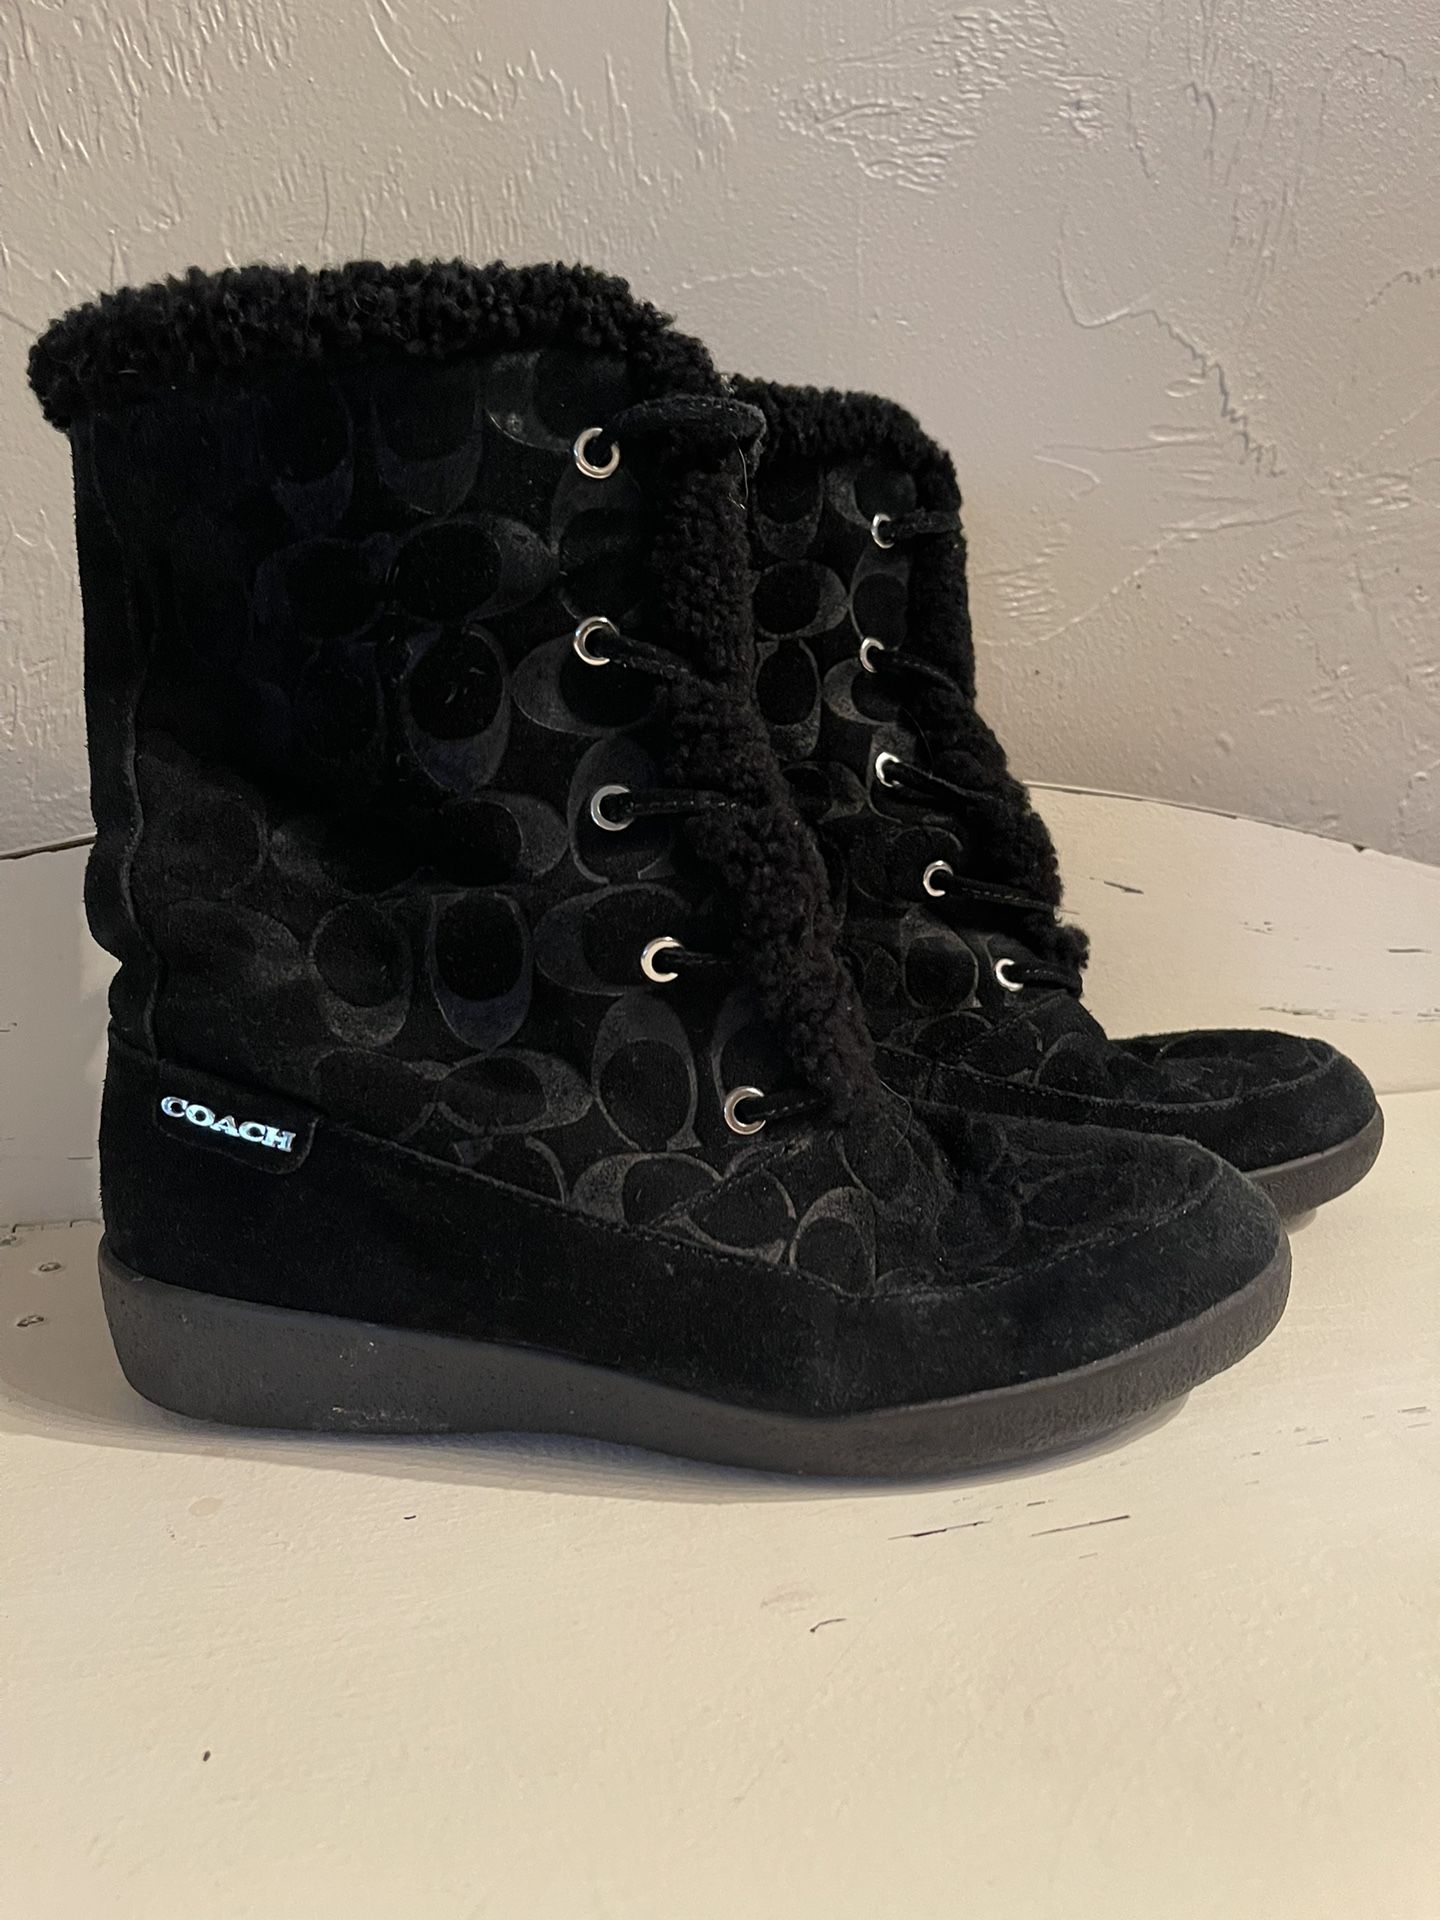 Black Coach Boots Size 8.5